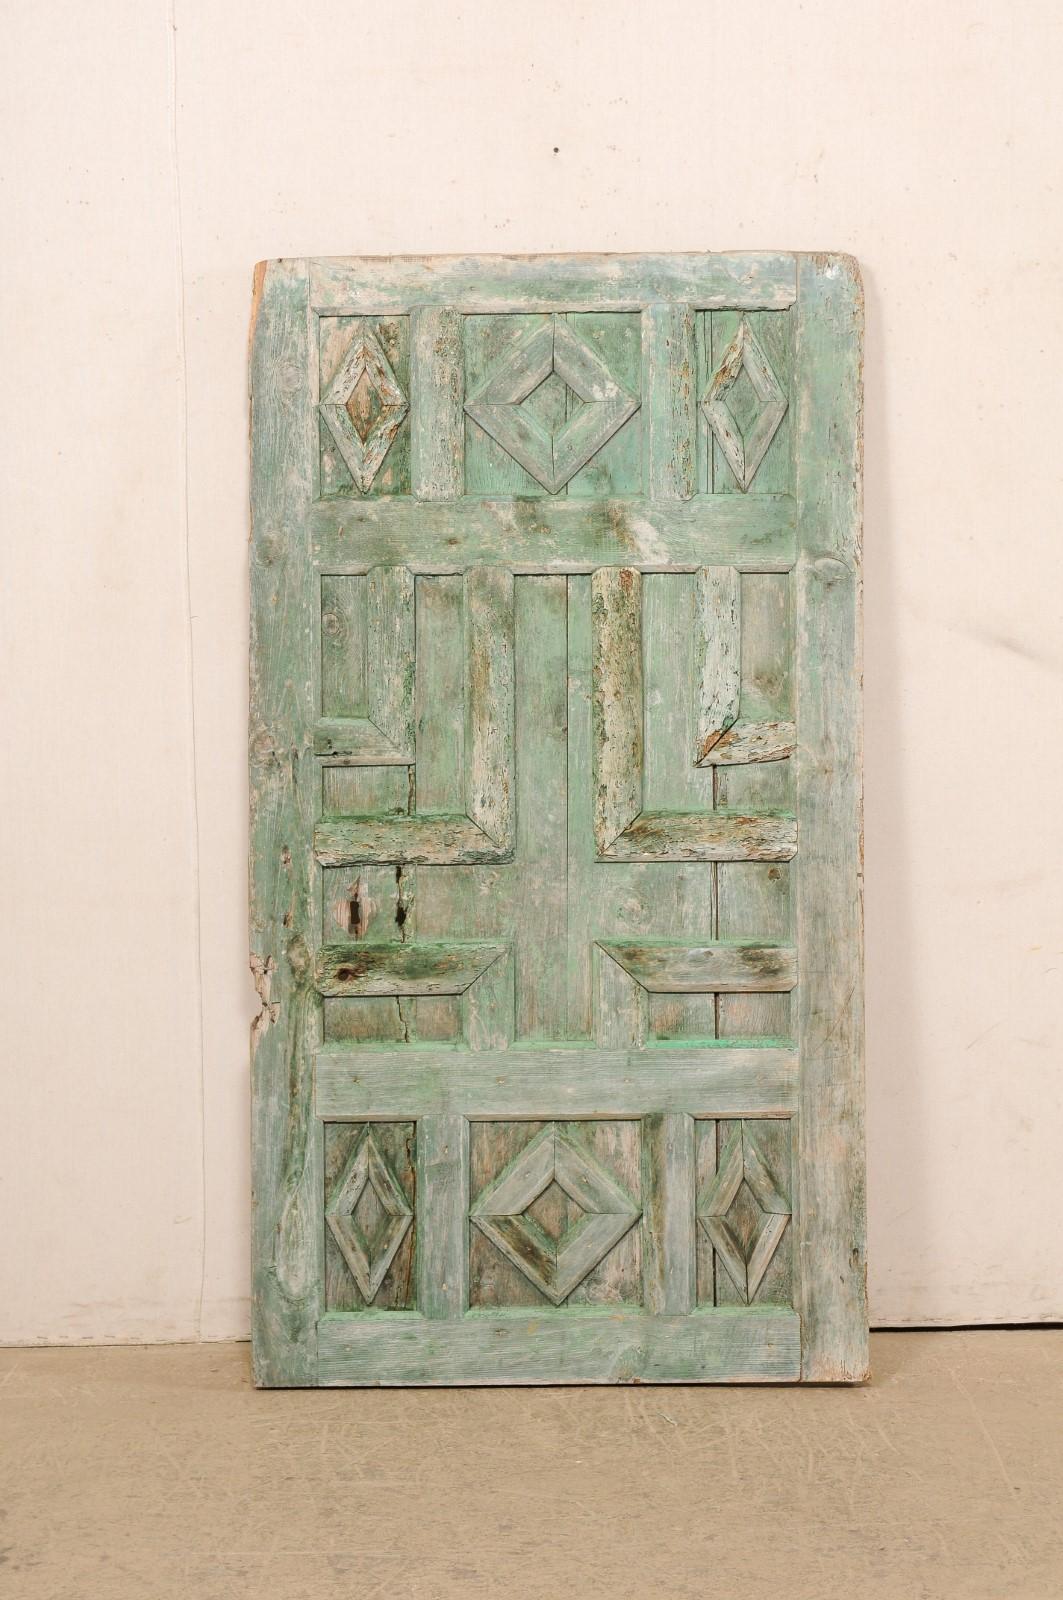 Porte en bois à panneaux décoratifs peinte en Espagne, datant du XIXe siècle. Cette porte ancienne d'Espagne a été conçue avec des panneaux en relief, aux motifs géométriques variés, créant un motif unique et agréable. La face avant / côté décoré